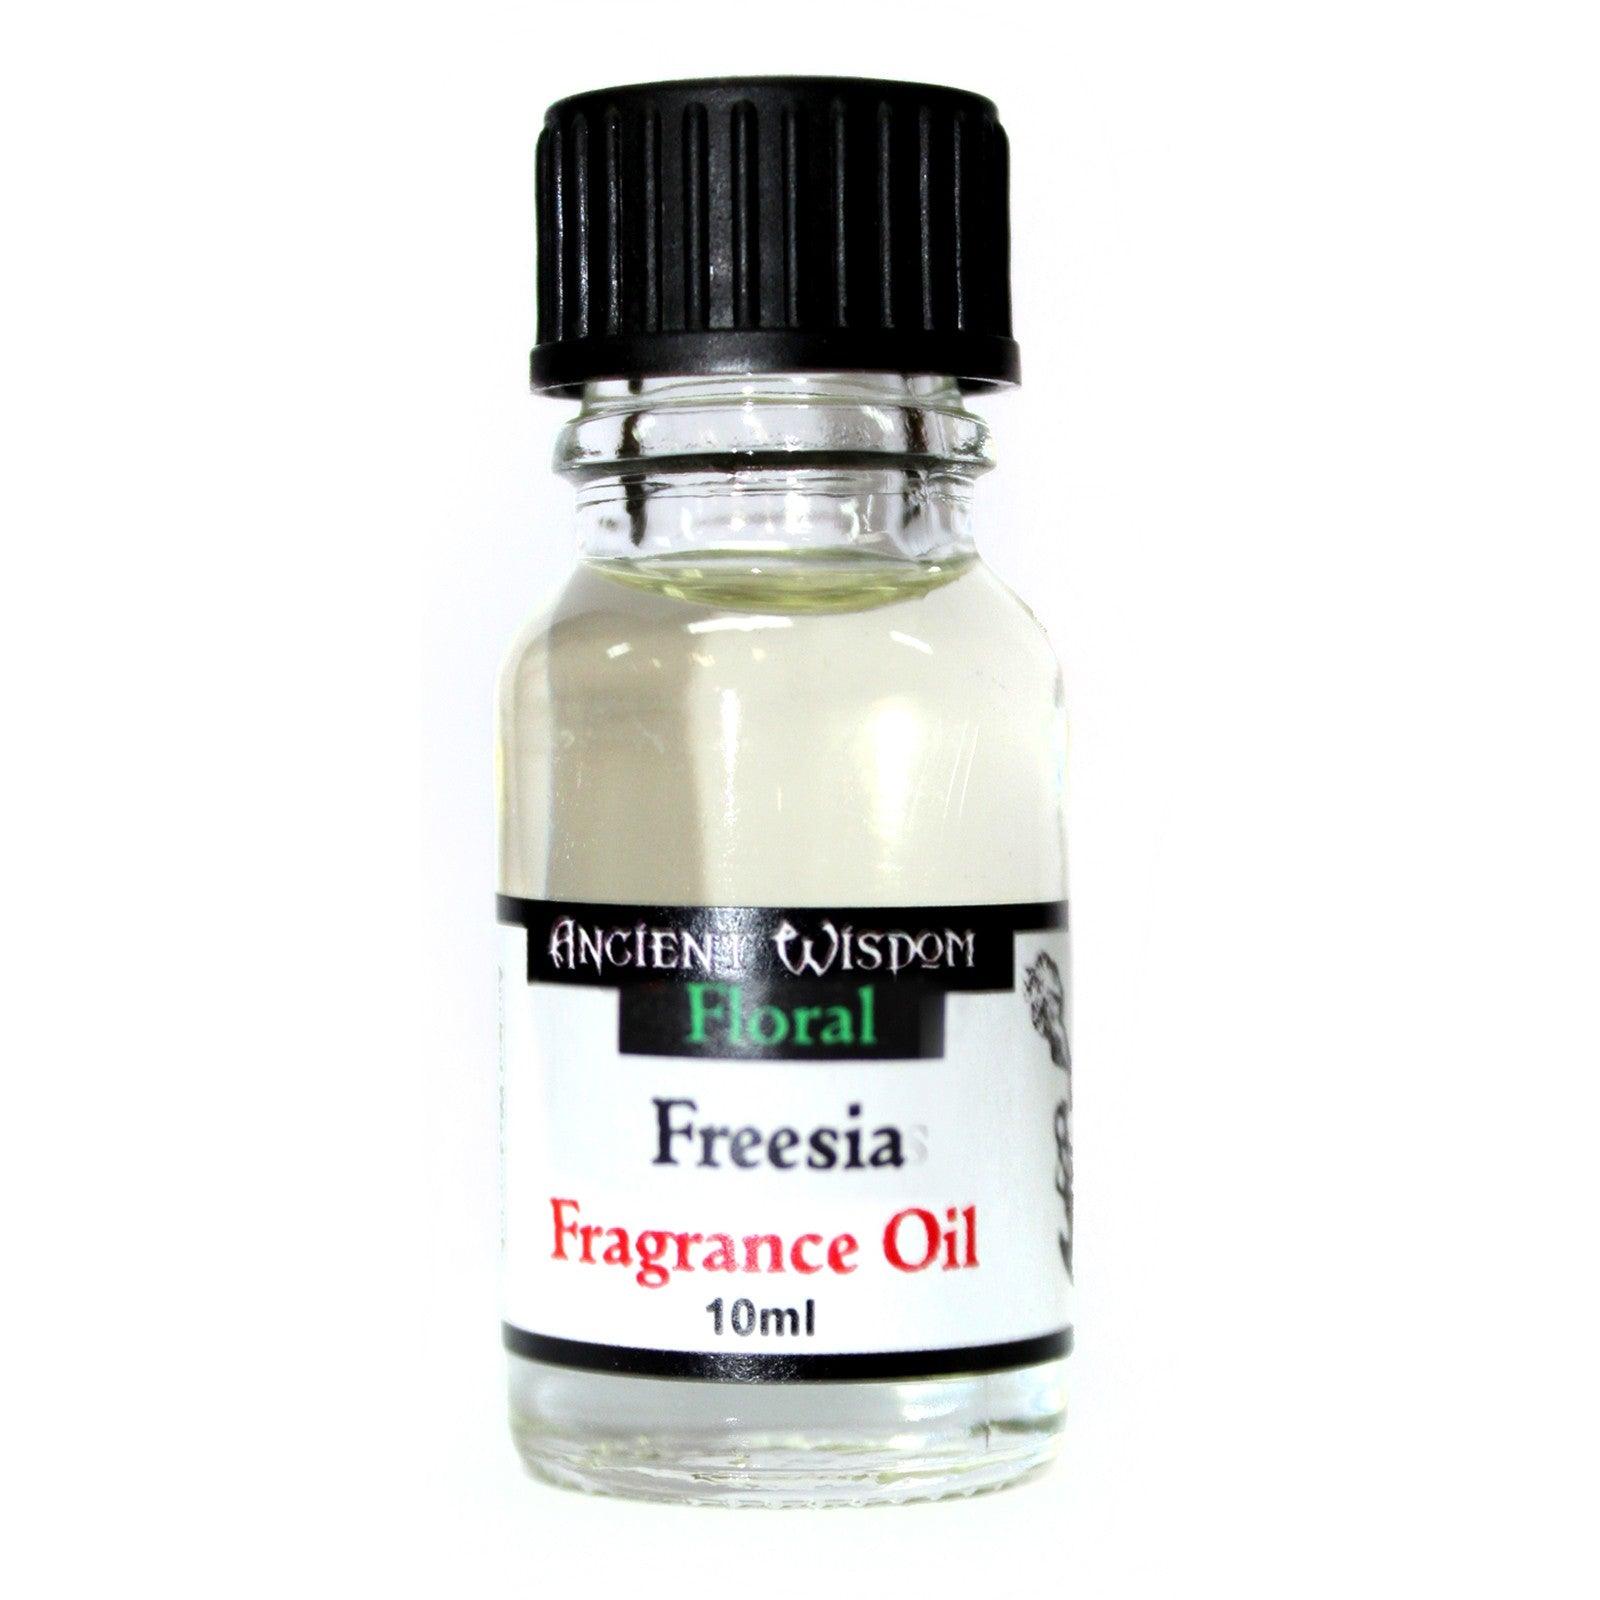 10ml Freesia Fragrance Oil - Charming Spaces